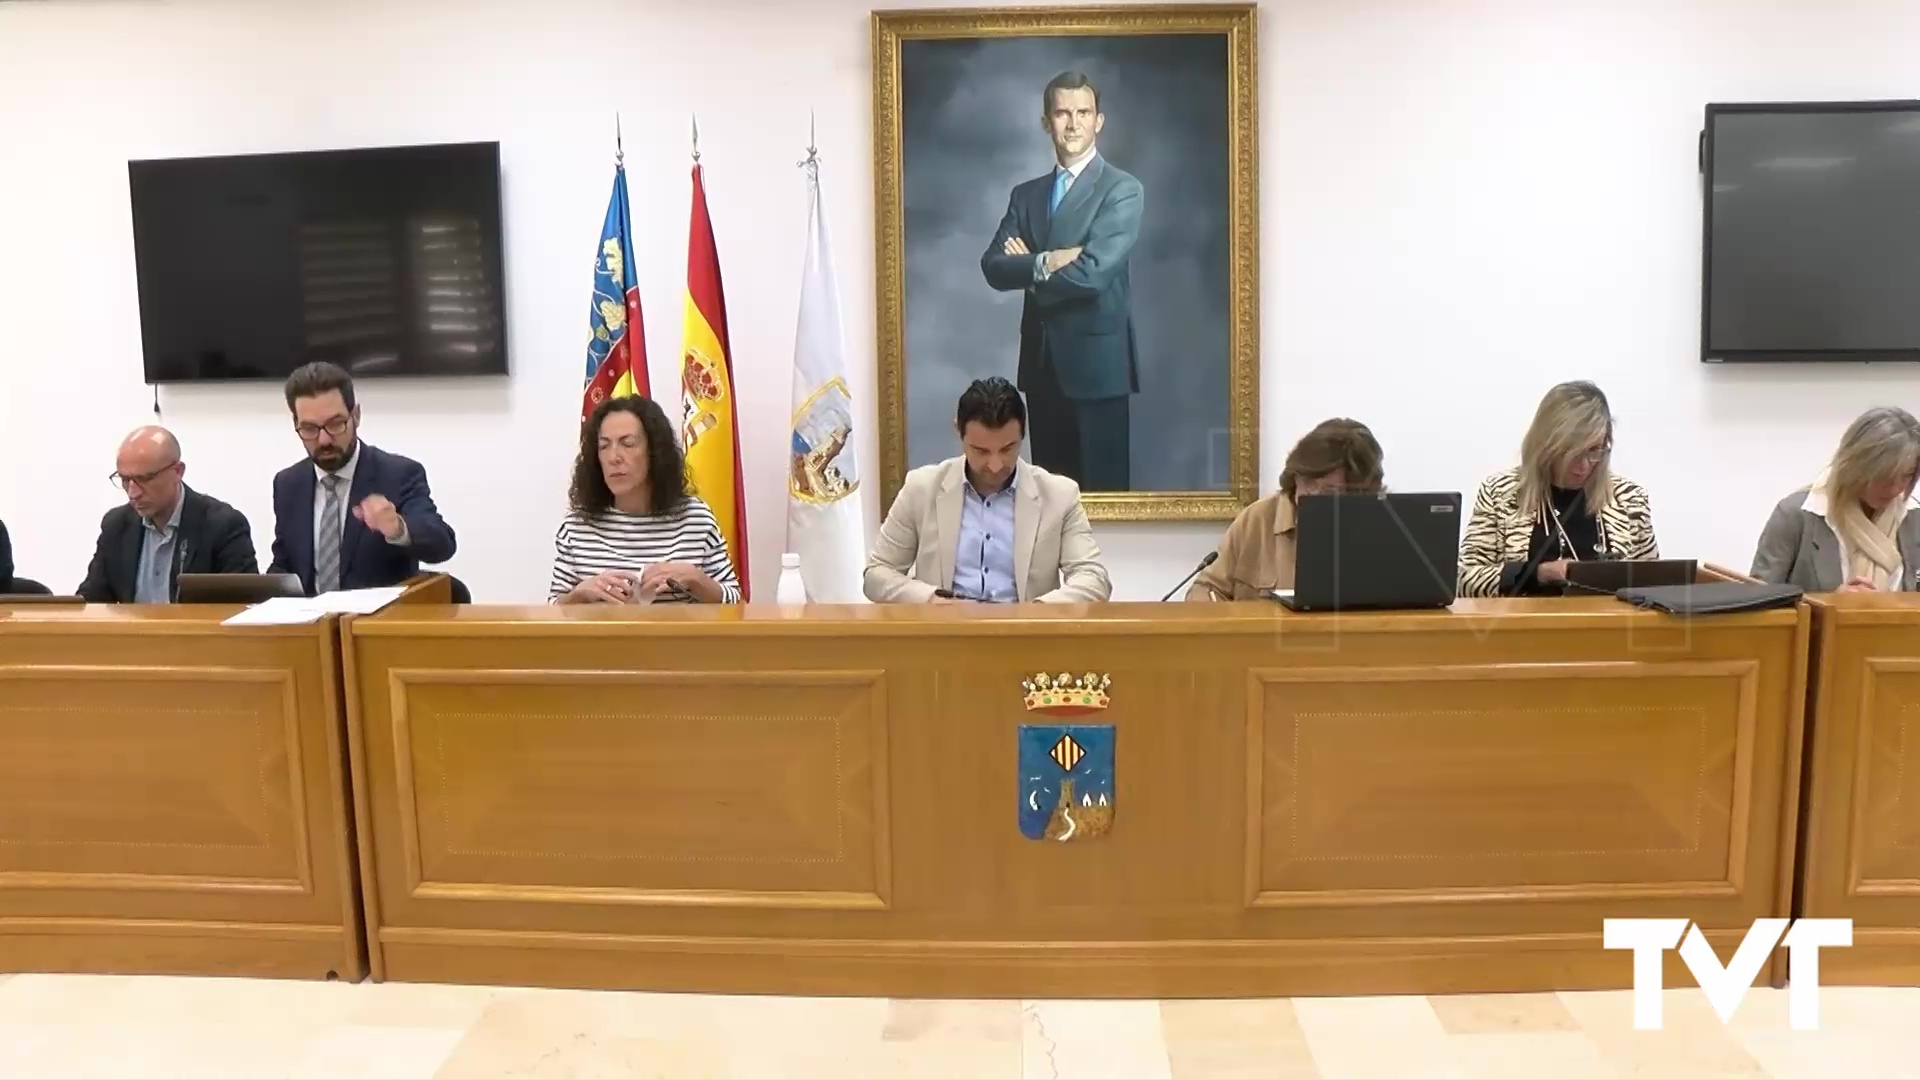 Imagen de El lunes, 27 de noviembre, se celebra pleno ordinario en el ayuntamiento de Torrevieja